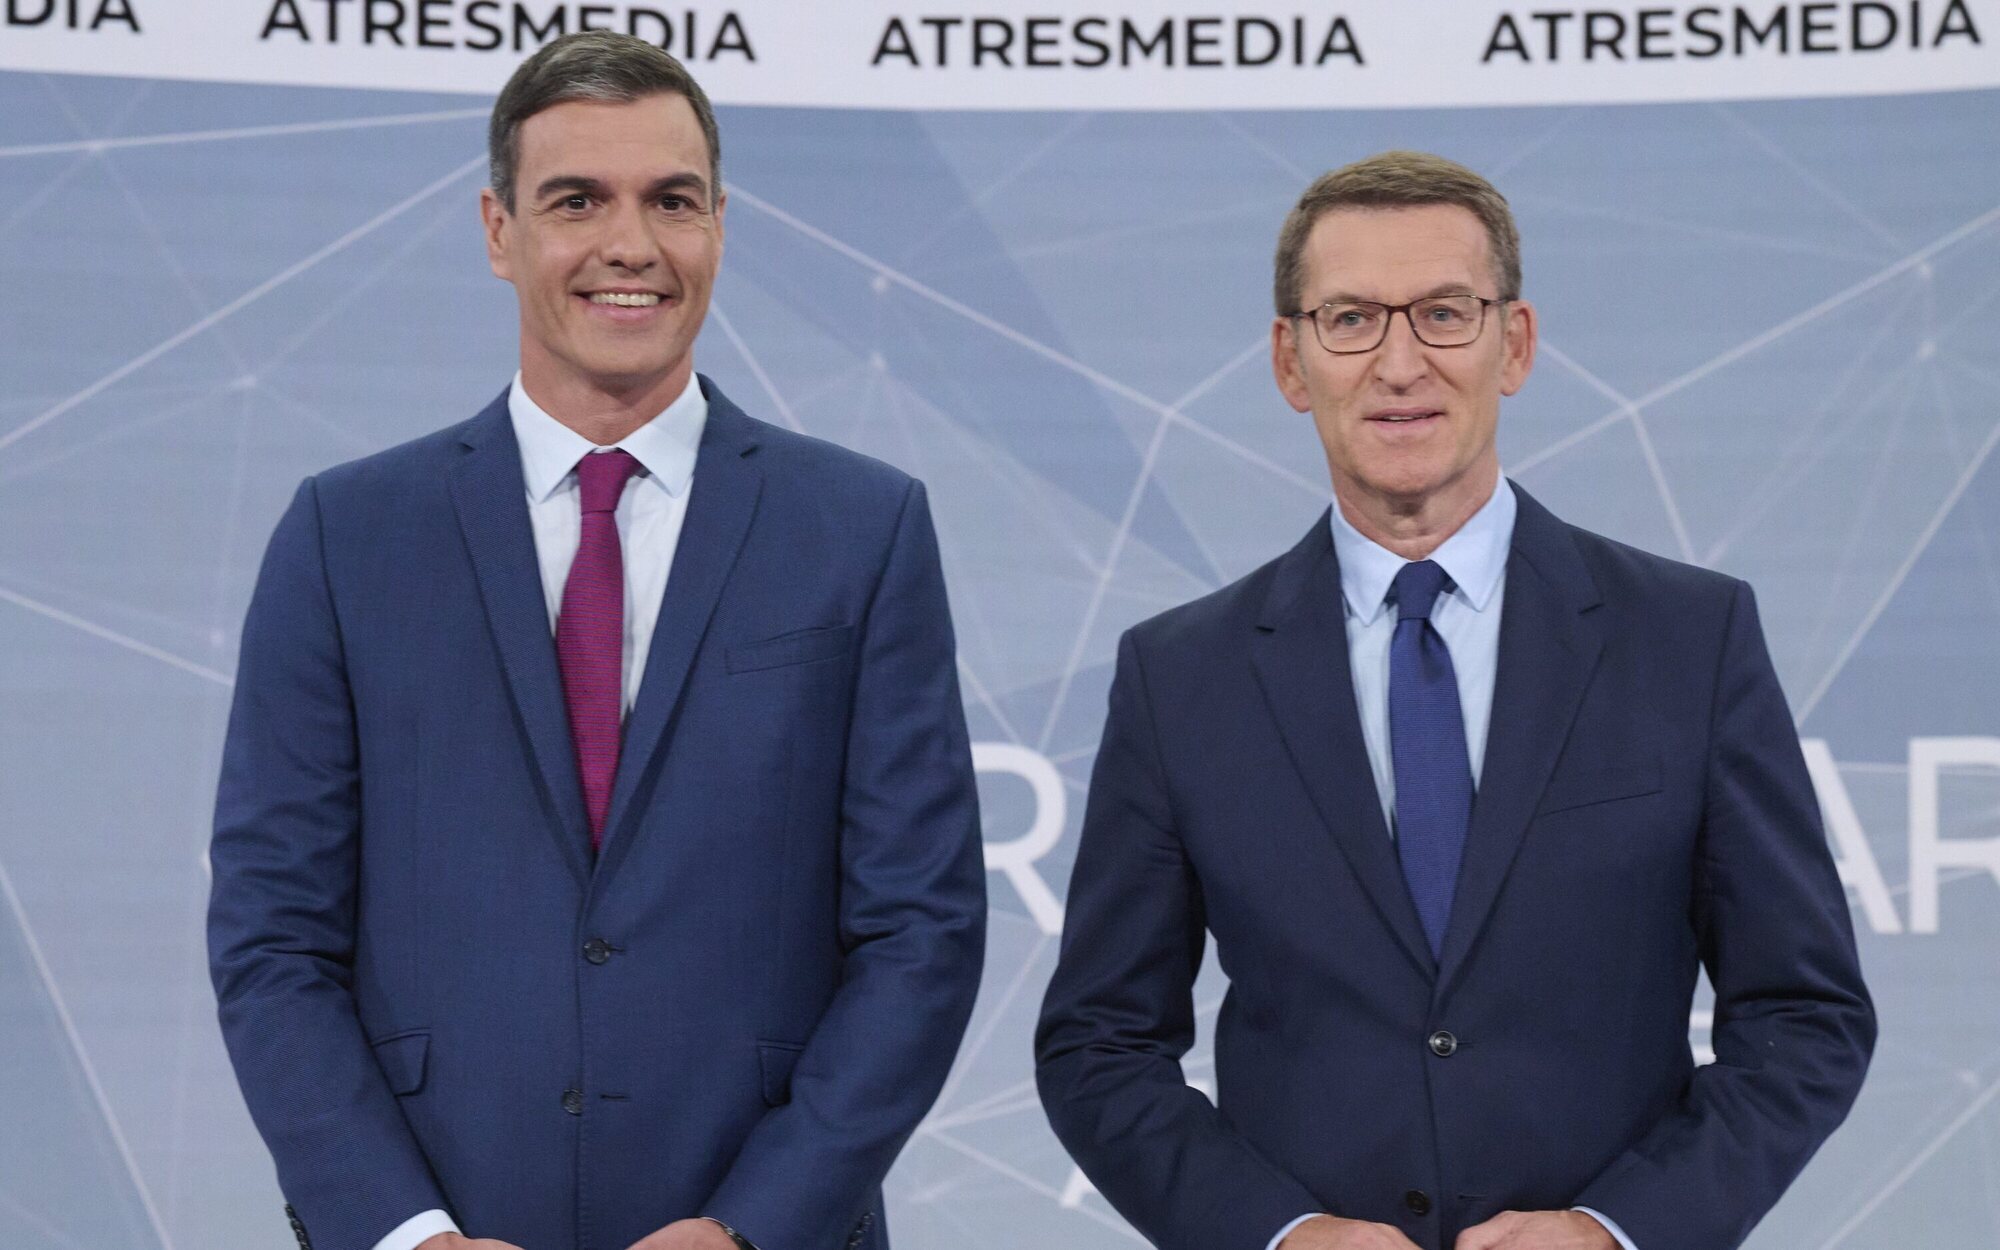 La tensión entre Pedro Sánchez y Alberto Núñez Feijóo reina entre los memes del debate de Atresmedia